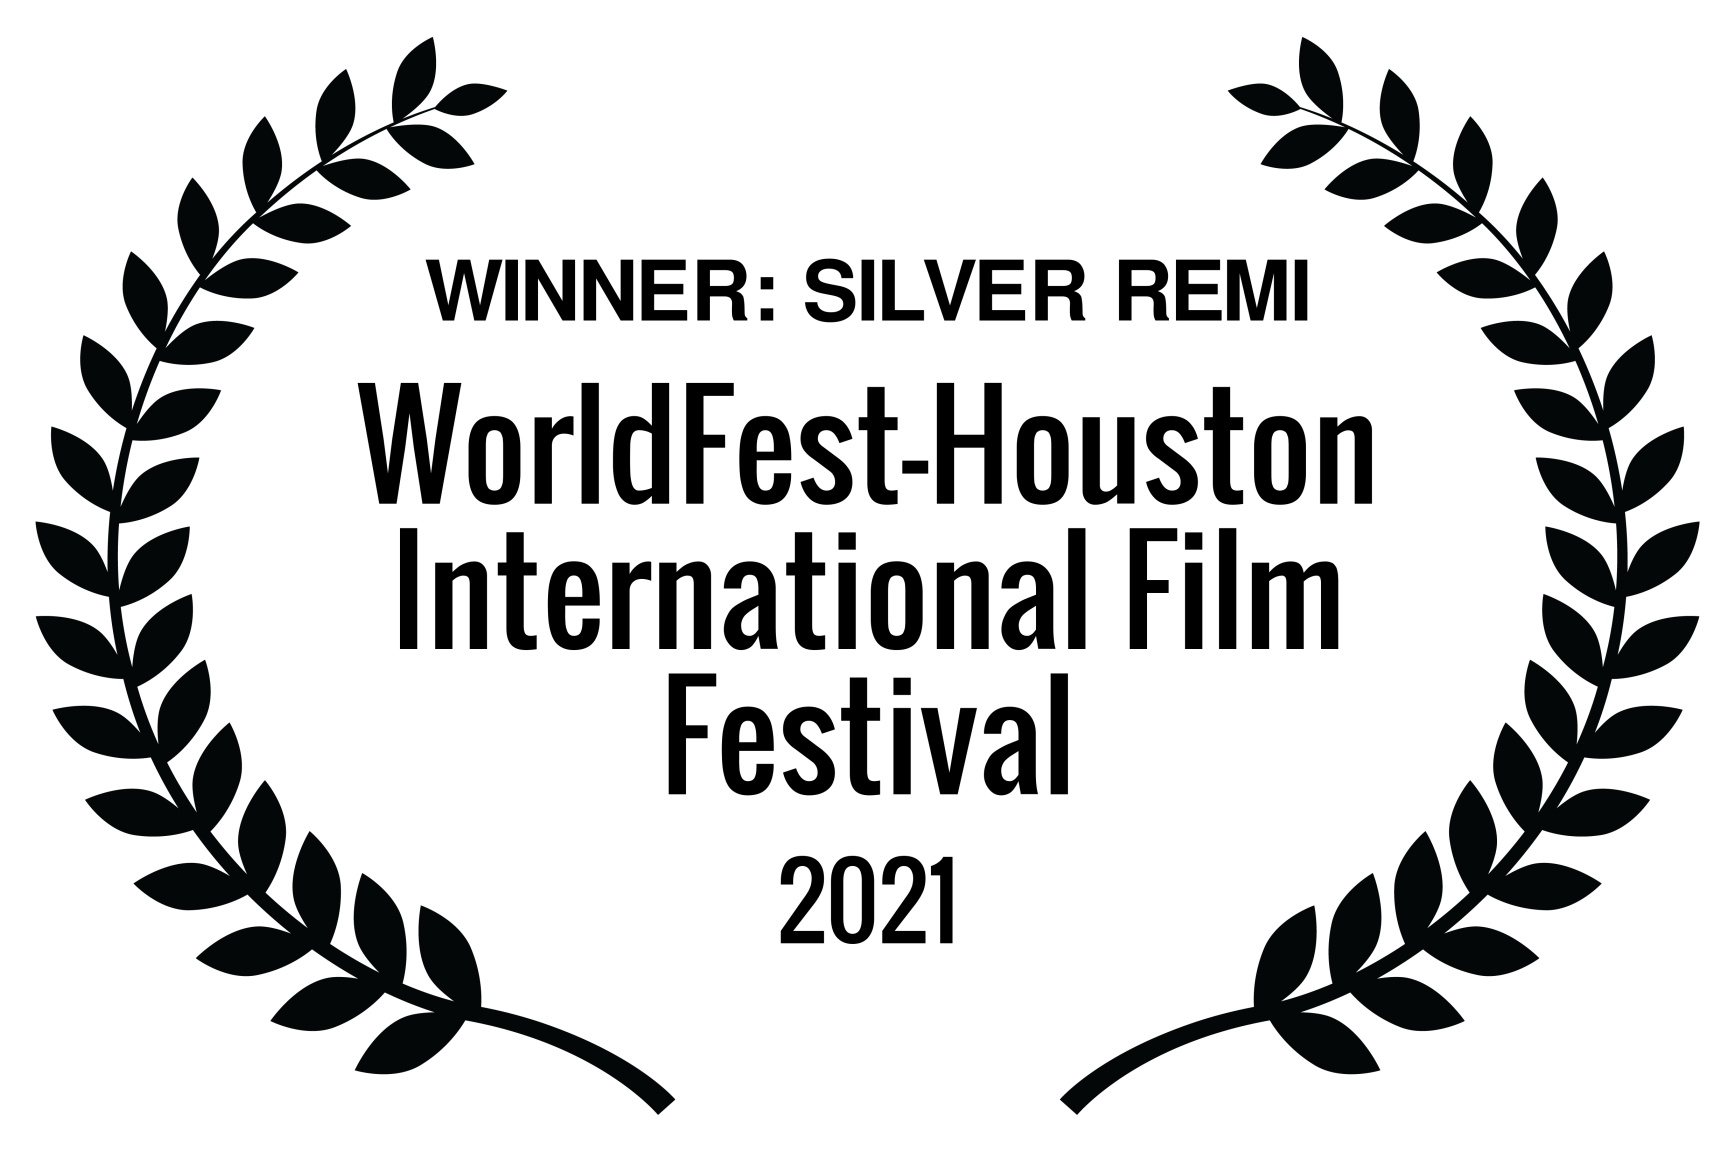 WINNER SILVER REMI – WorldFest-Houston International Film Festival – 2021